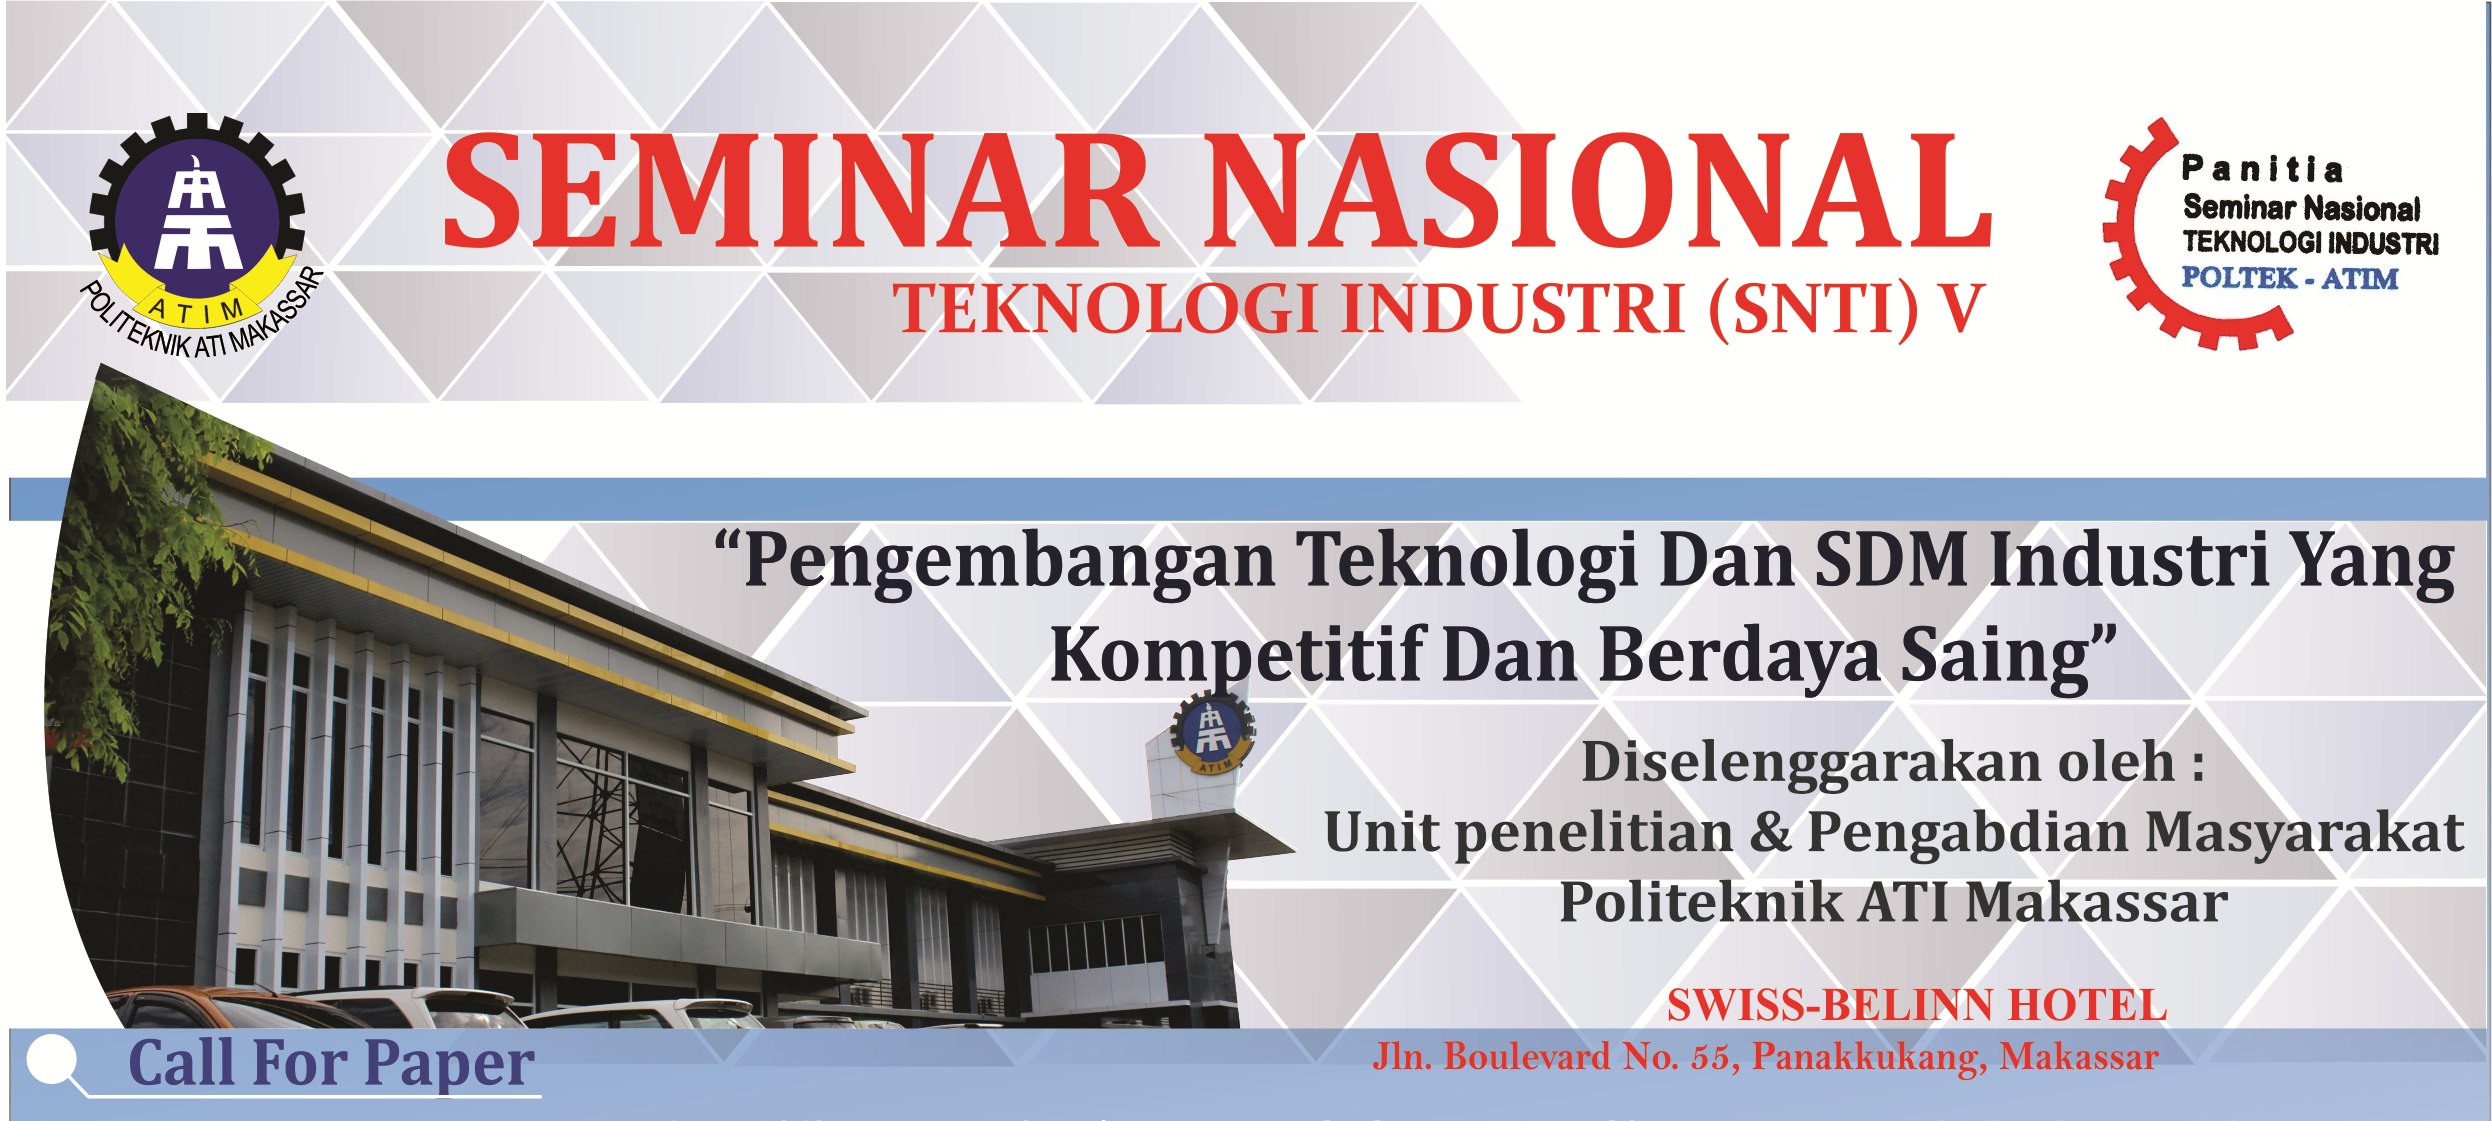 Seminar Nasional Teknologi Industri (SNTI) V 2017